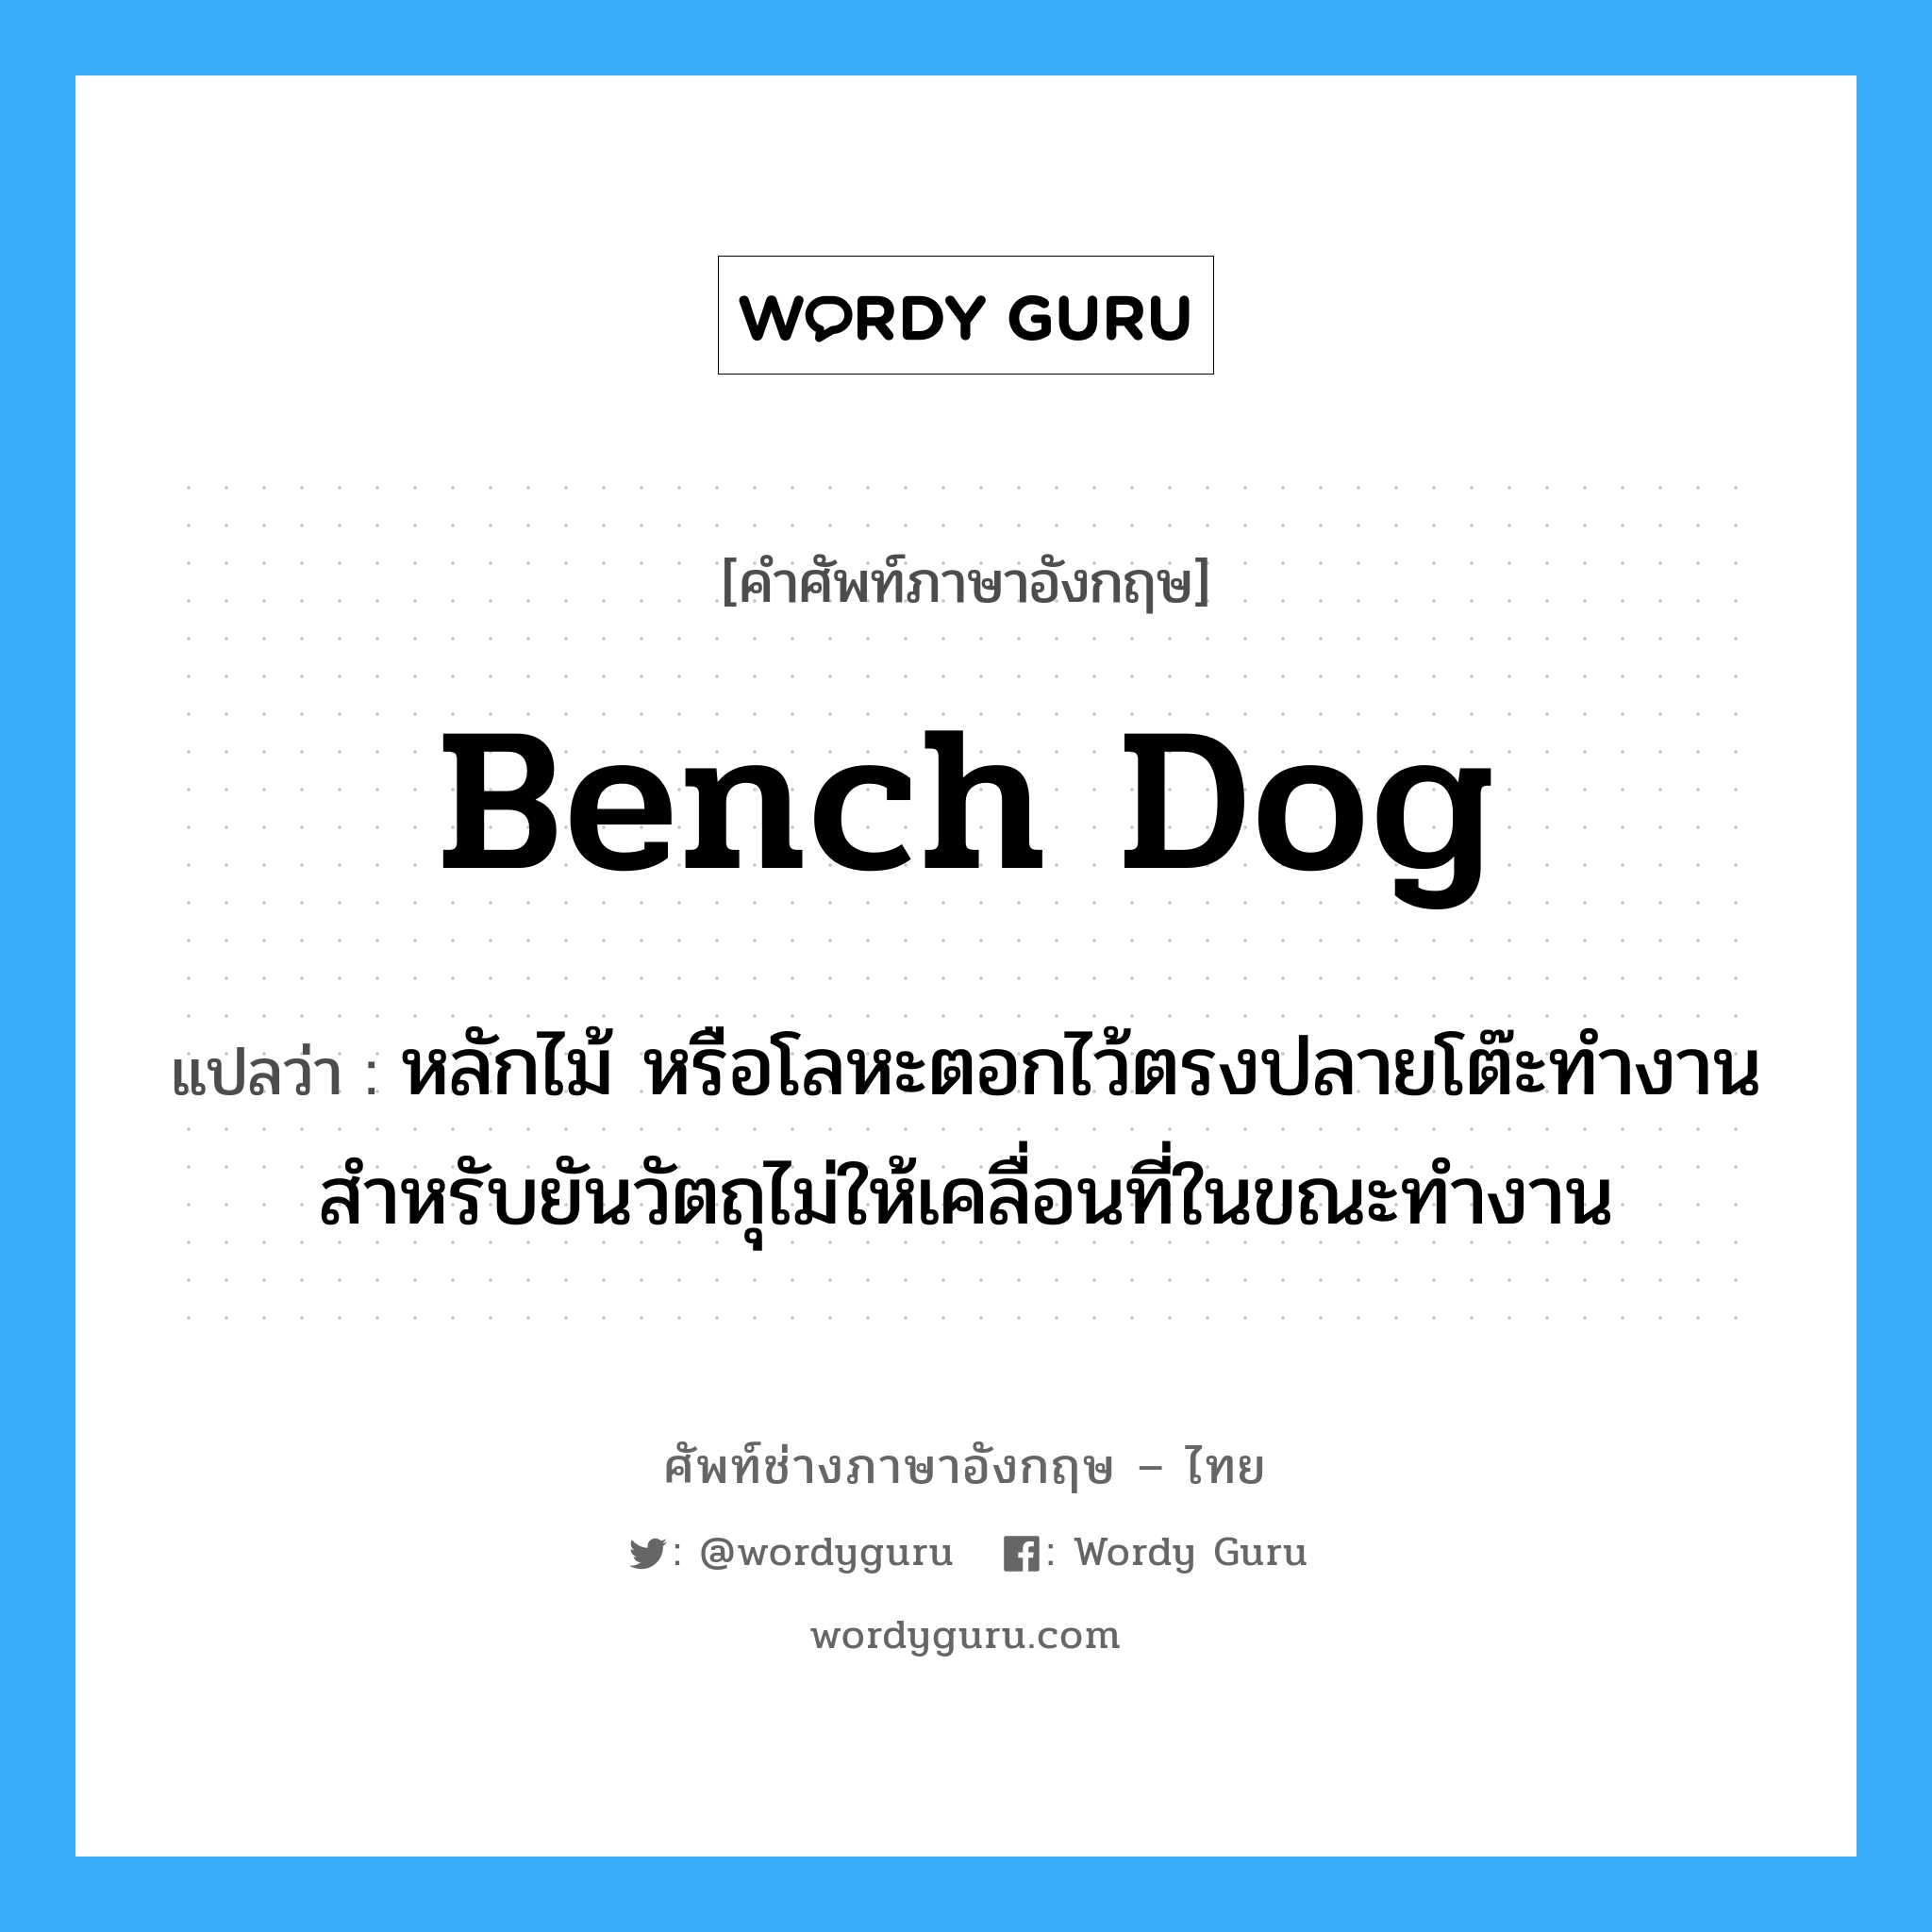 bench dog แปลว่า?, คำศัพท์ช่างภาษาอังกฤษ - ไทย bench dog คำศัพท์ภาษาอังกฤษ bench dog แปลว่า หลักไม้ หรือโลหะตอกไว้ตรงปลายโต๊ะทำงาน สำหรับยันวัตถุไม่ให้เคลื่อนที่ในขณะทำงาน